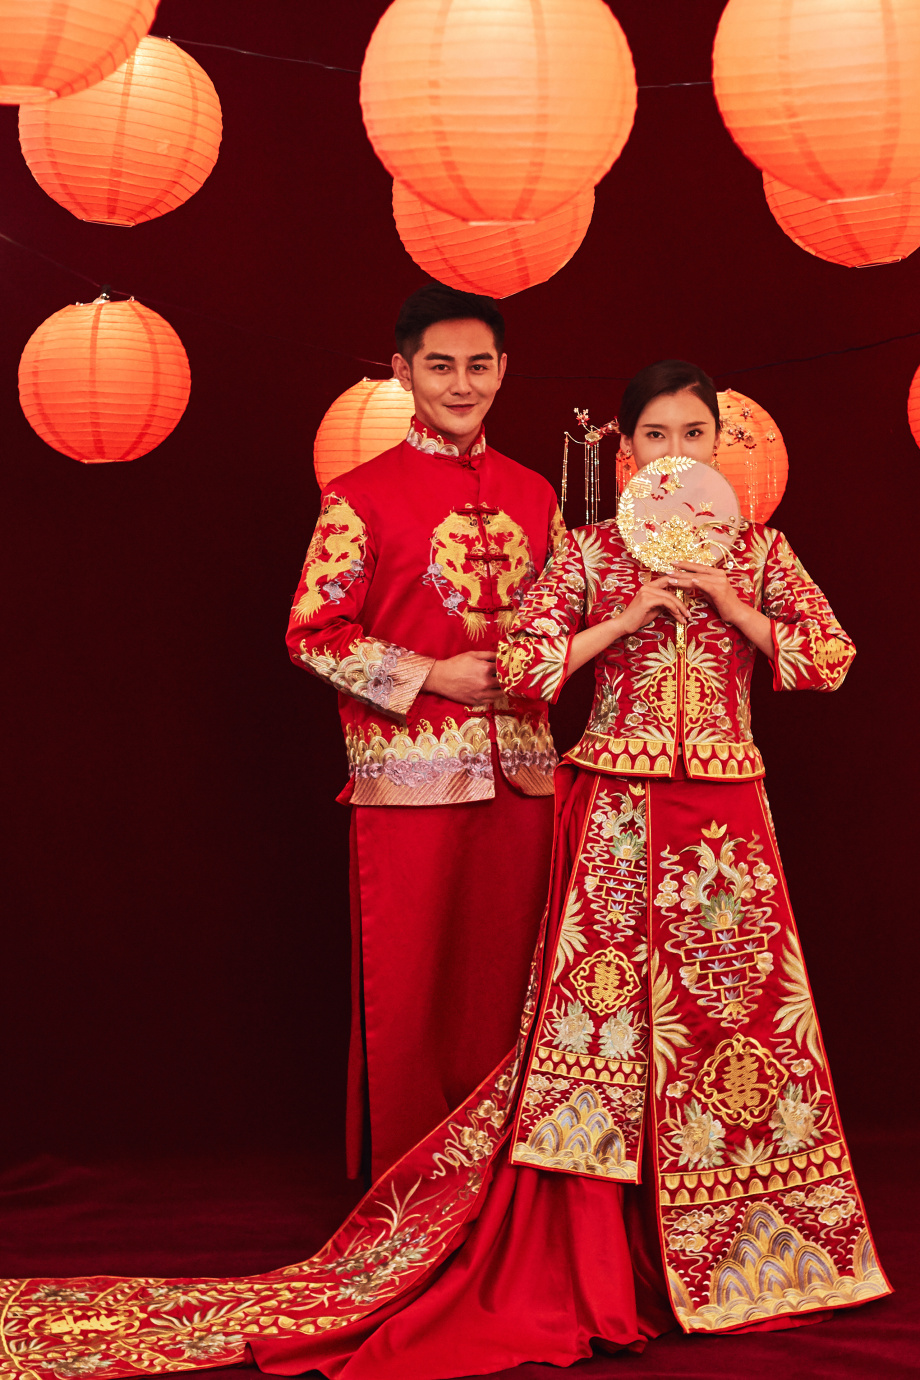 Sáng tạo và đầy tính nghệ thuật, hình ảnh những cặp đôi trong bộ đồ trang phục truyền thống đậm chất Trung Quốc sẽ khiến bạn bị mê hoặc. Concept chụp ảnh cưới phong cách Trung Quốc sẽ giúp bạn lưu giữ lại những kỷ niệm đẹp nhất trong cuộc đời.